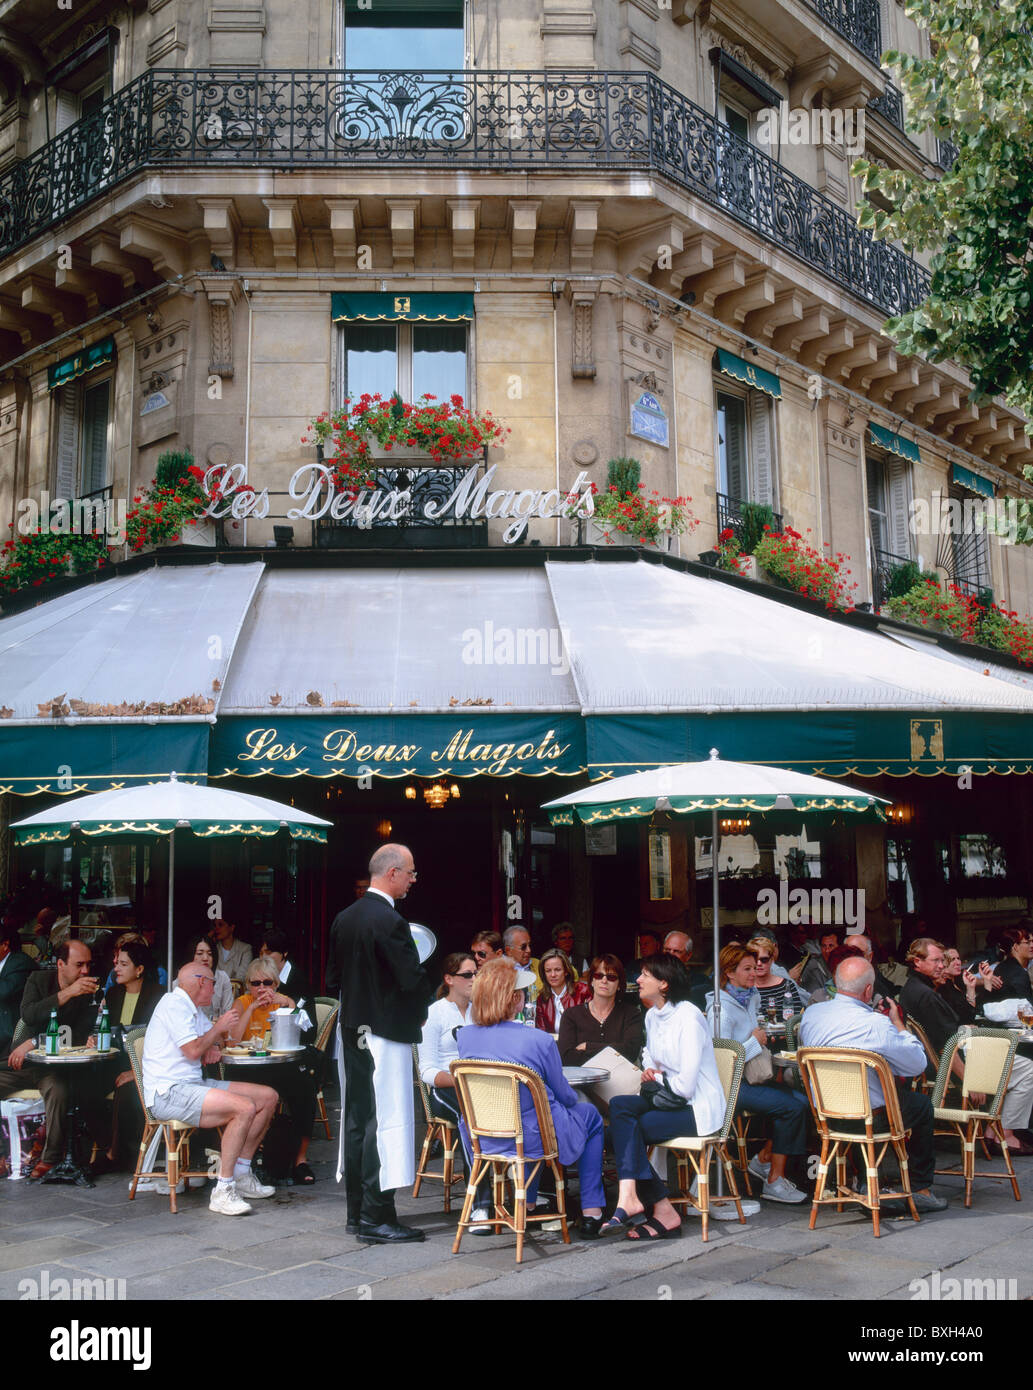 Les Deux Magots Cafe, Paris, France Stock Photo